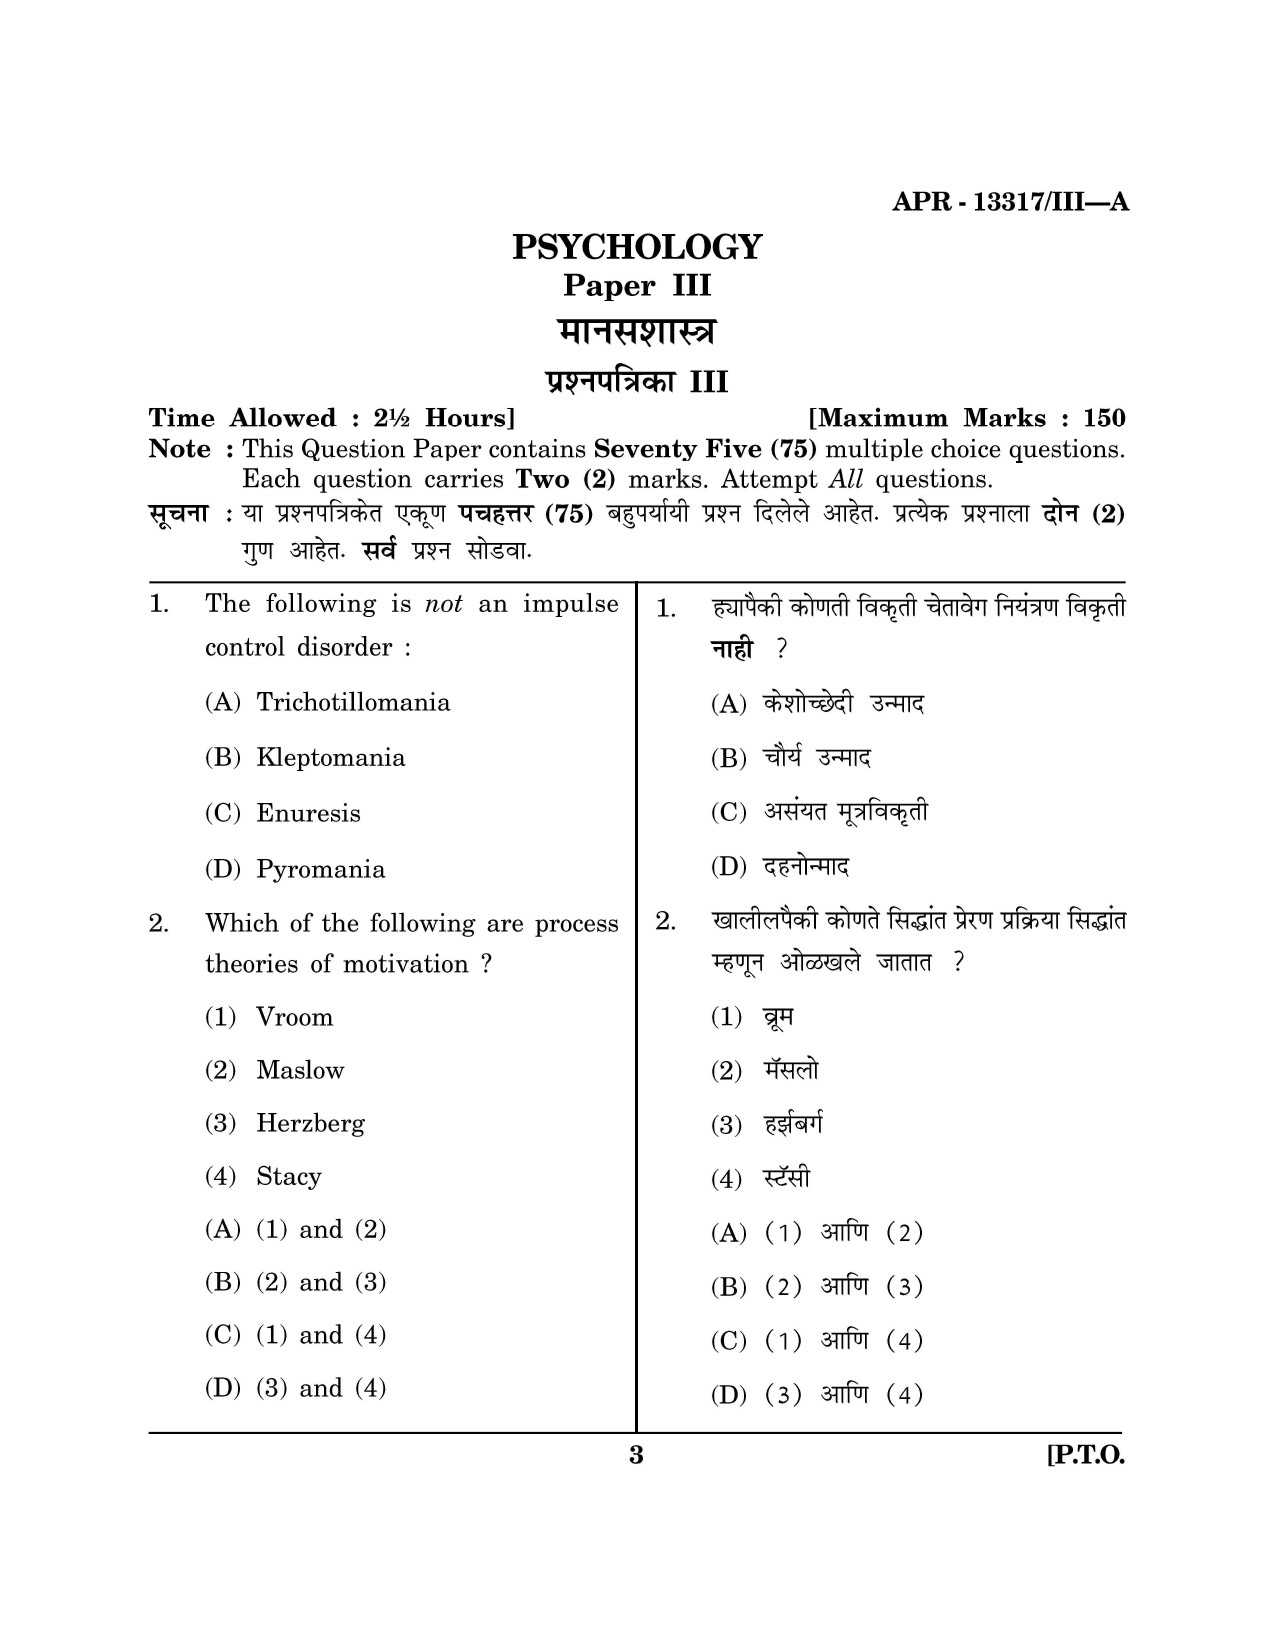 Maharashtra SET Psychology Question Paper III April 2017 2